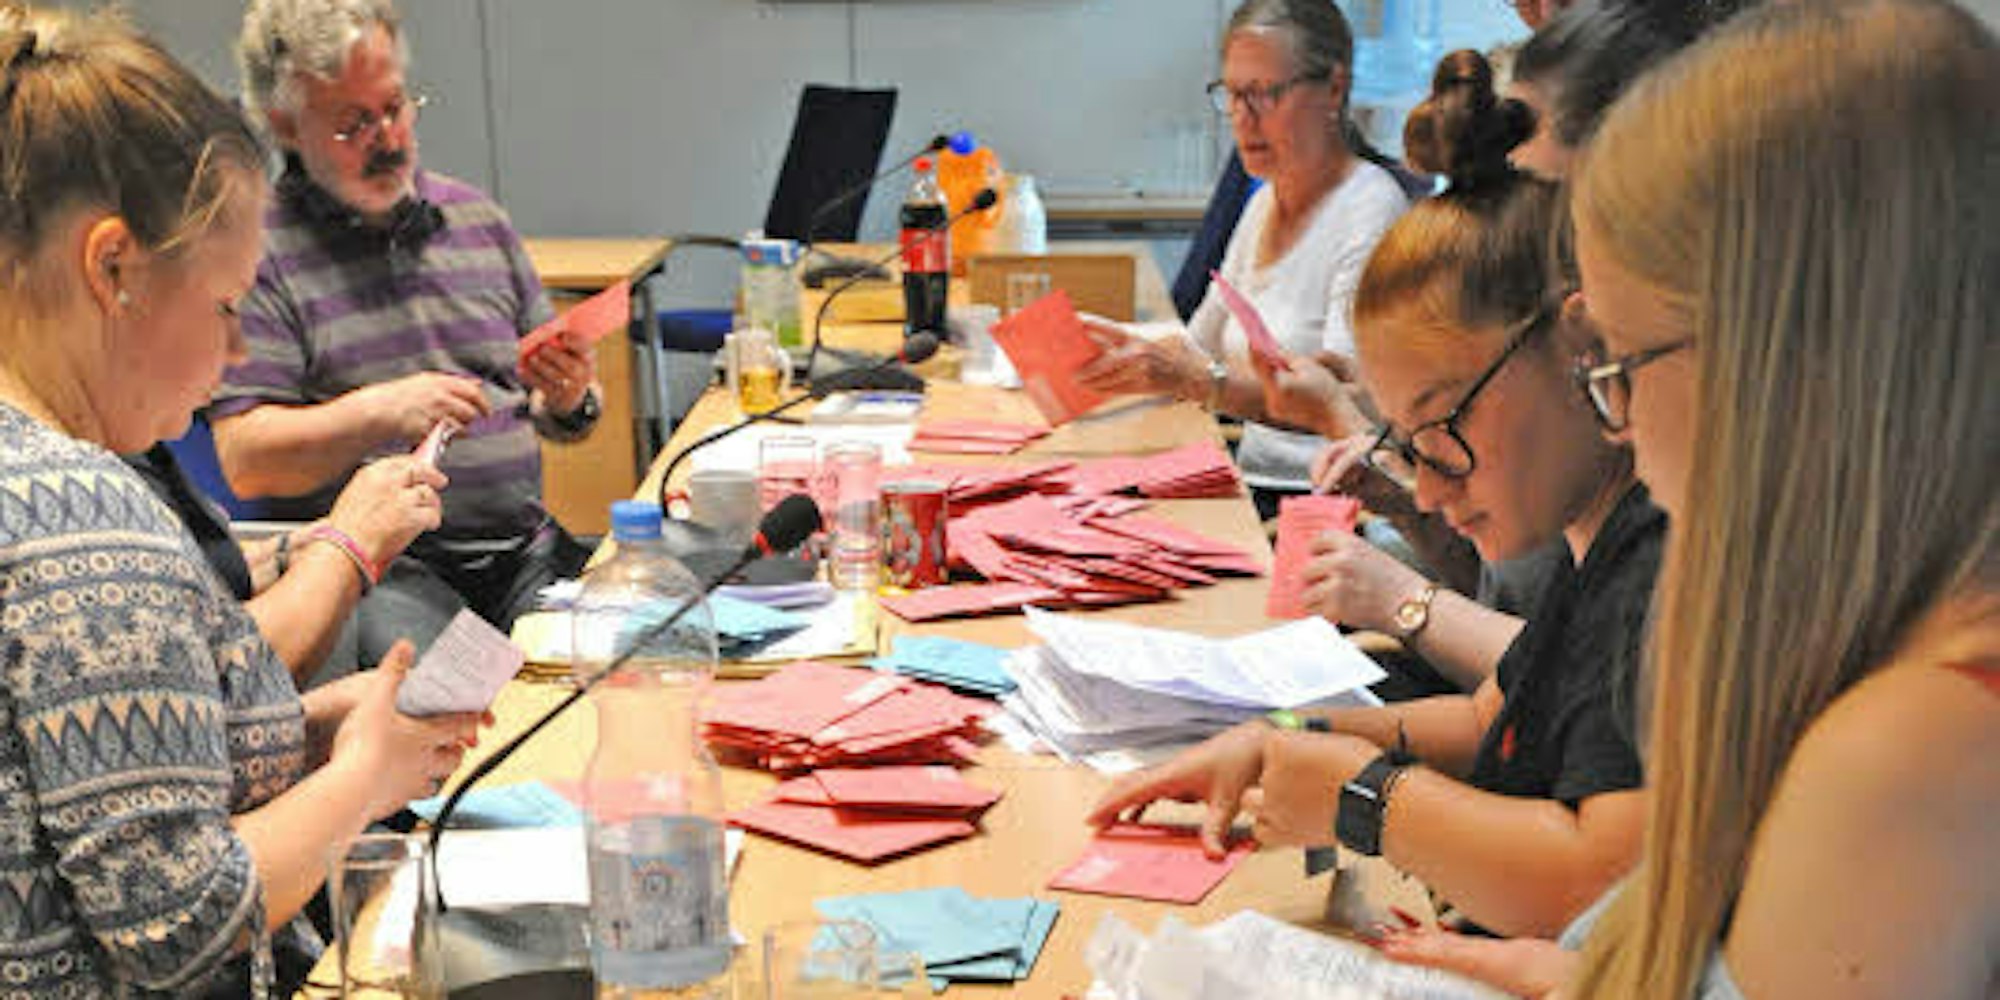 28 freiwillige Helfer der vier Briefwahl-Vorstände waren im Leichlinger Ratssaal schon ab 13 Uhr konzentriert mit dem Öffnen und Vorsortieren der roten Briefumschläge beschäftigt.